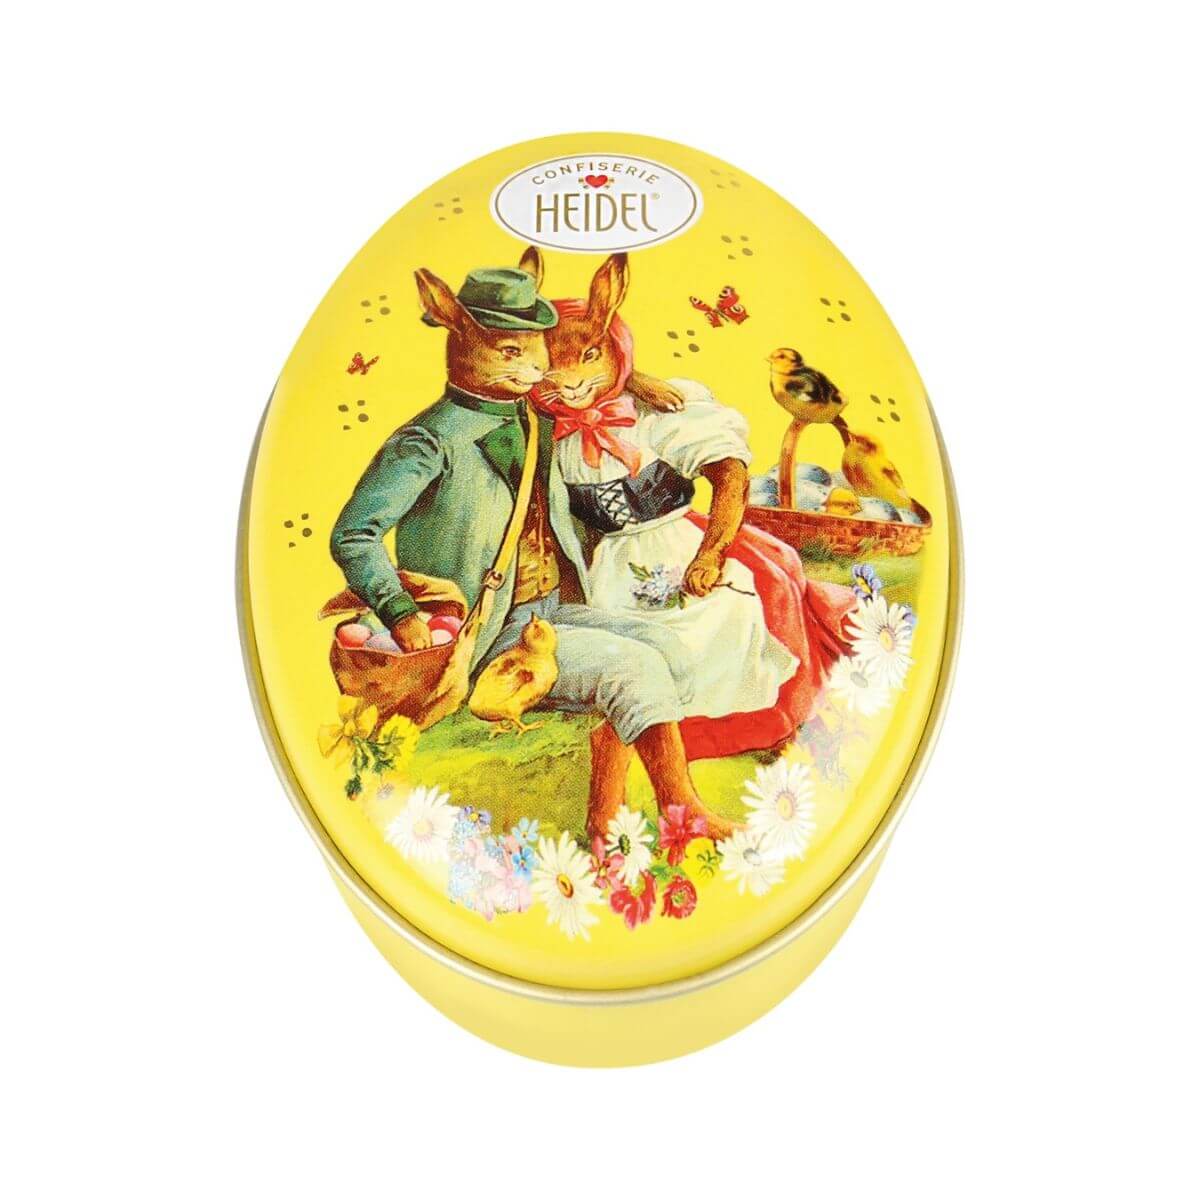 Heidel Easter Nostalgia Praline Chocolates Bunnies Tin